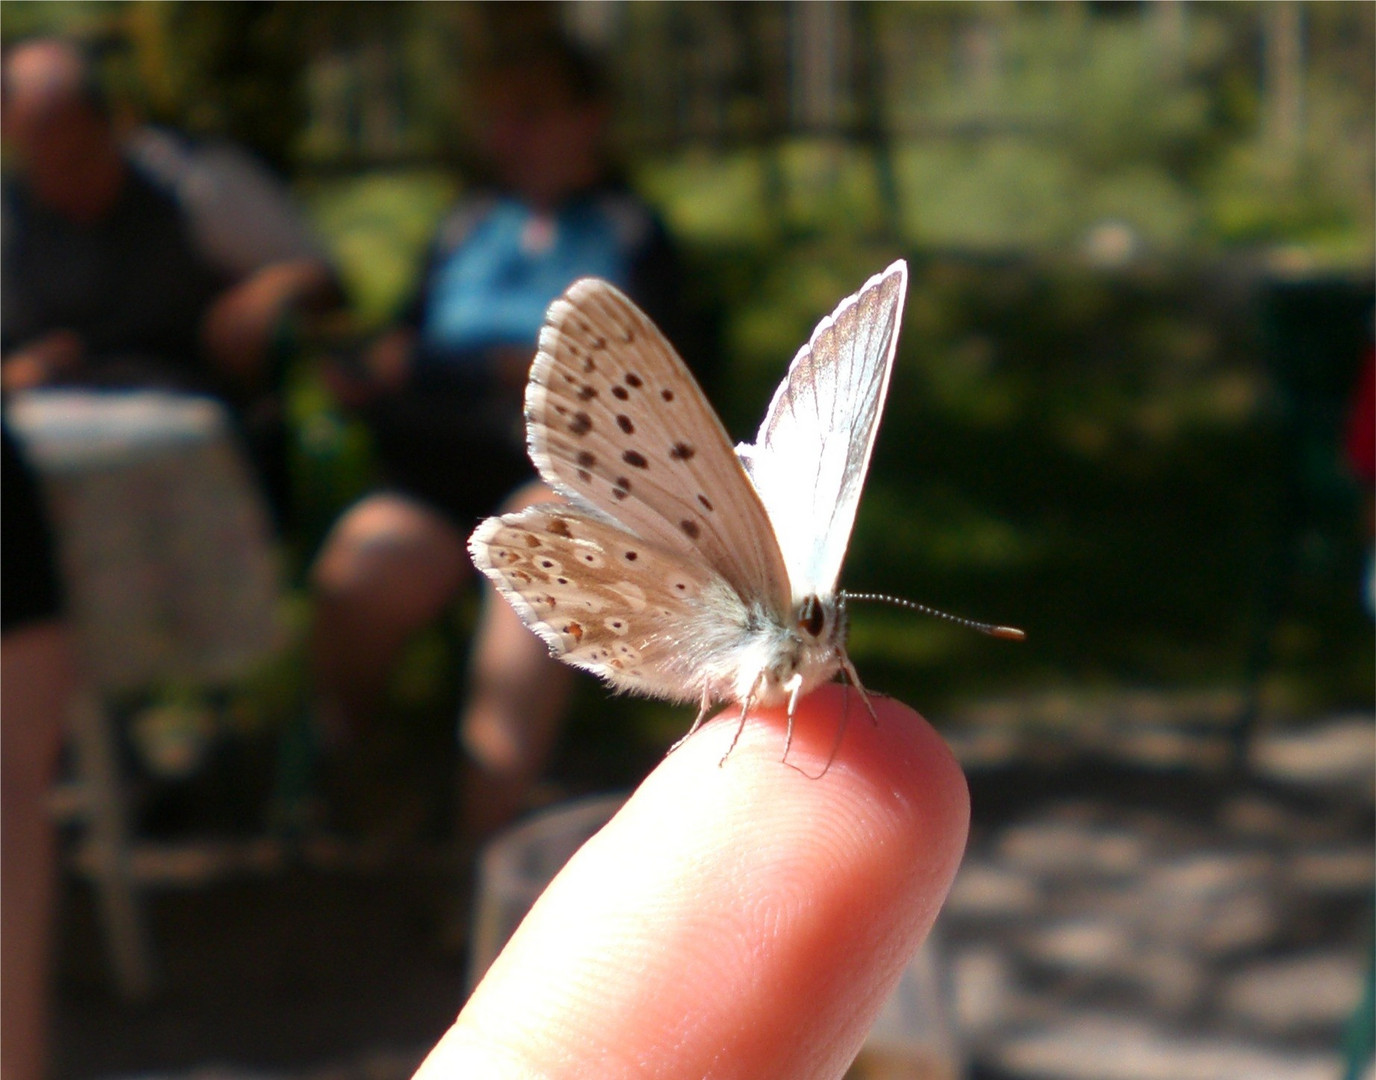 Butterfly on finger-tip